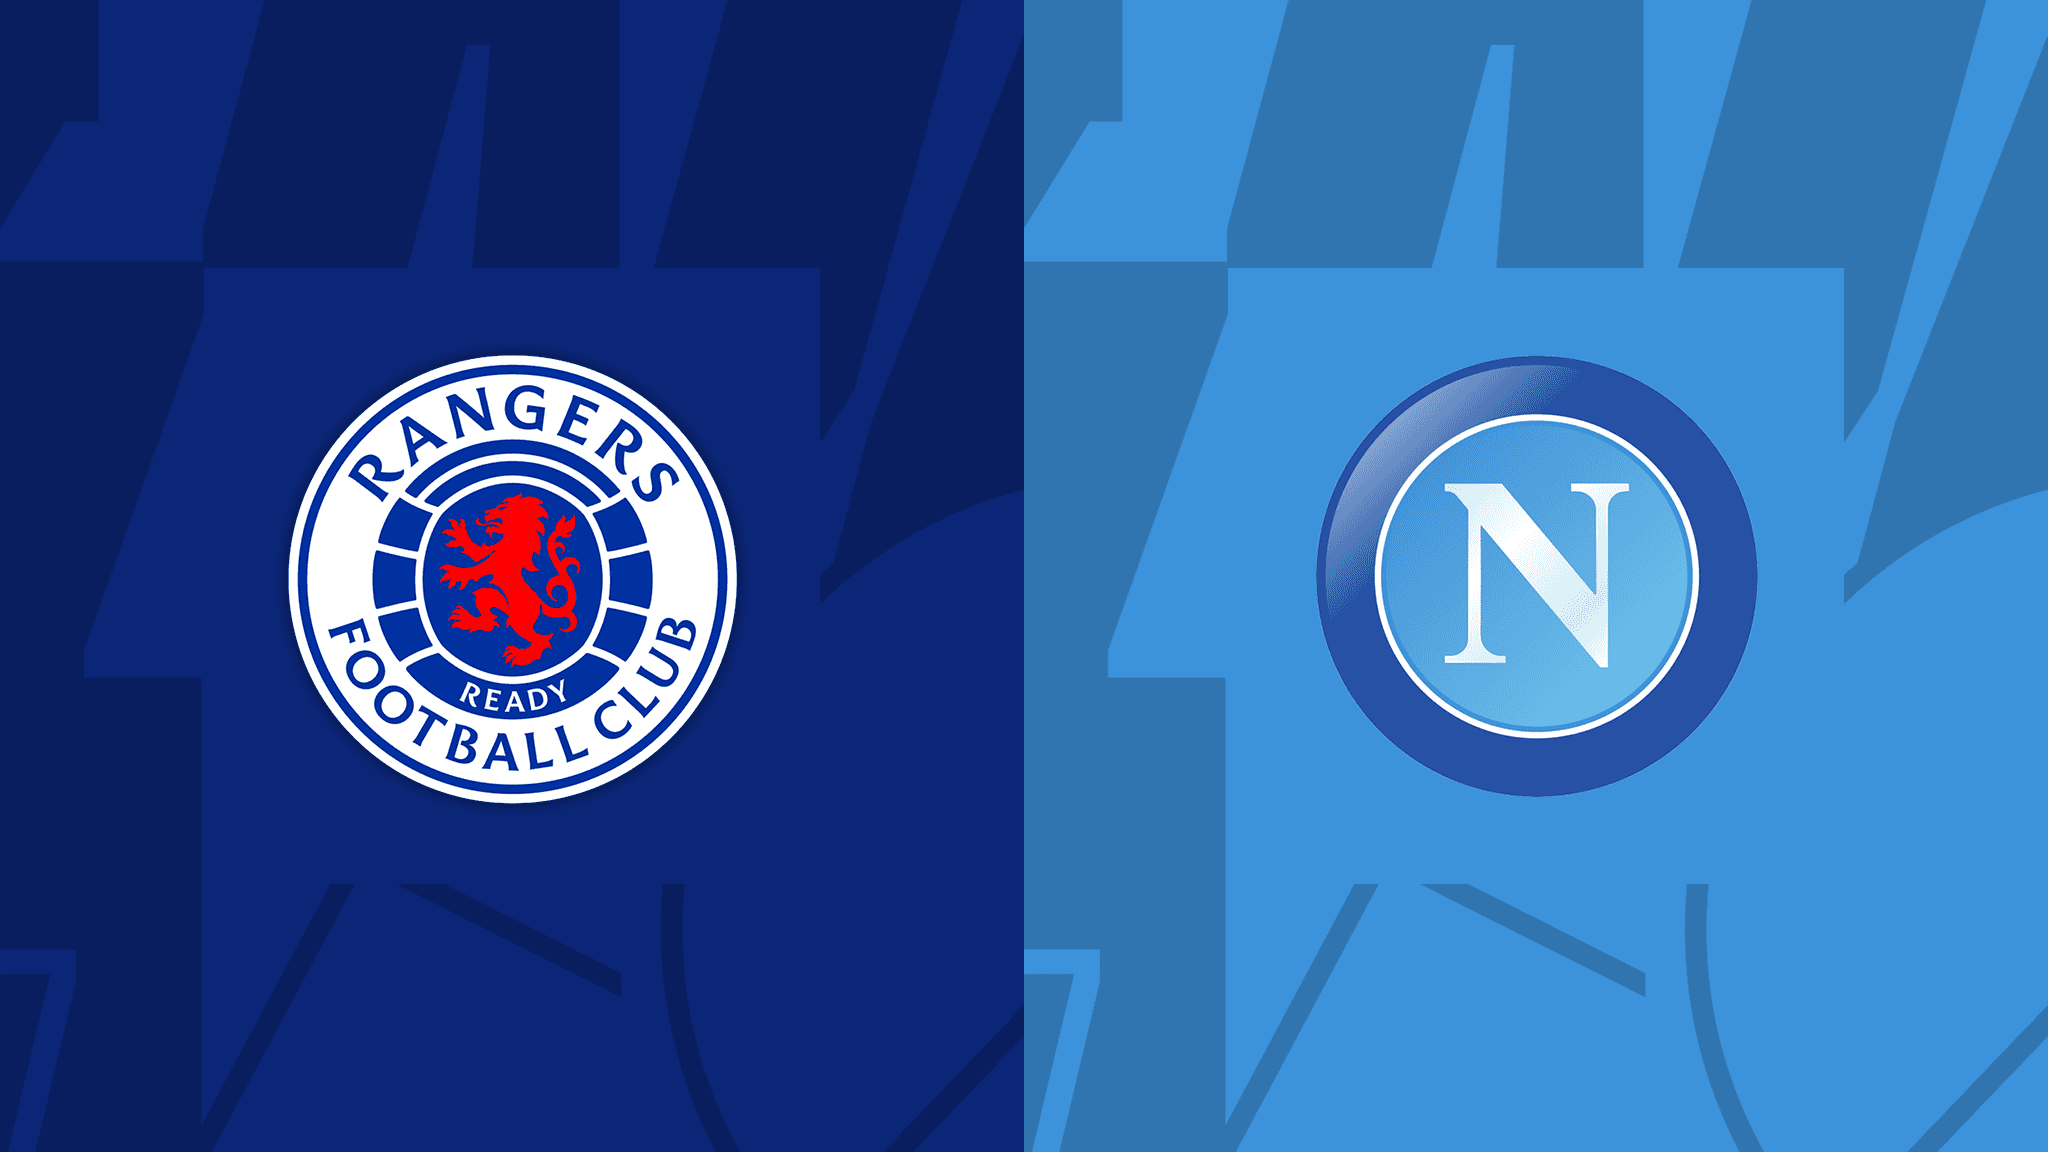 Rangers-Napoli logos